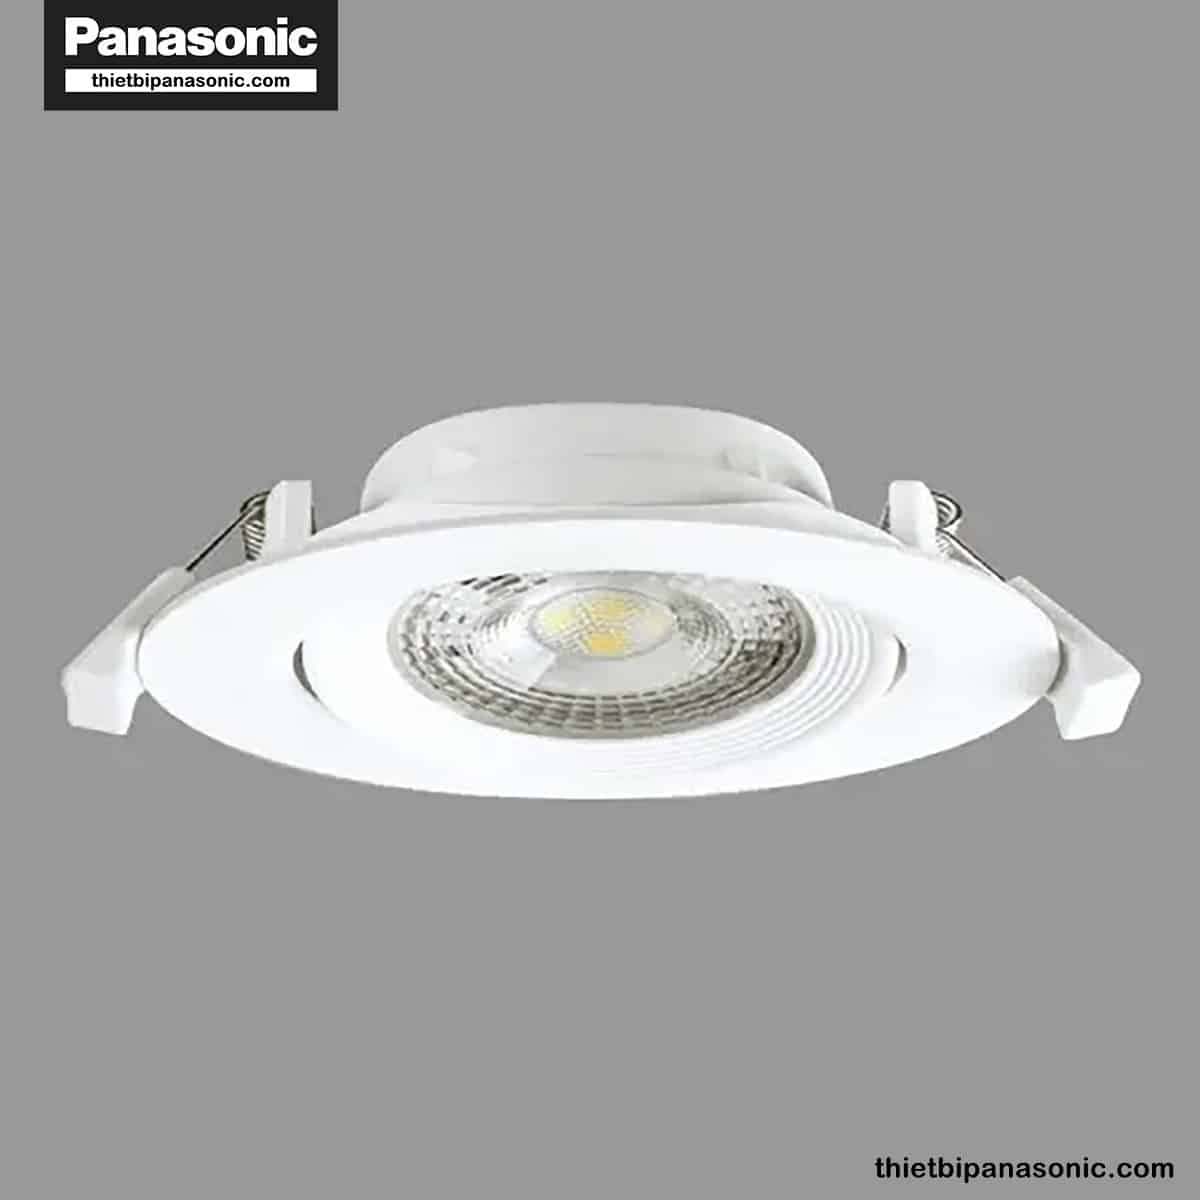 Đèn LED âm trần chỉnh góc Panasonic 7W tròn, góc chiếu 38° NNNC7630288 (ánh sáng vàng), NNNC7631288 (ánh sáng trung tính), NNNC7635288 (ánh sáng trắng)